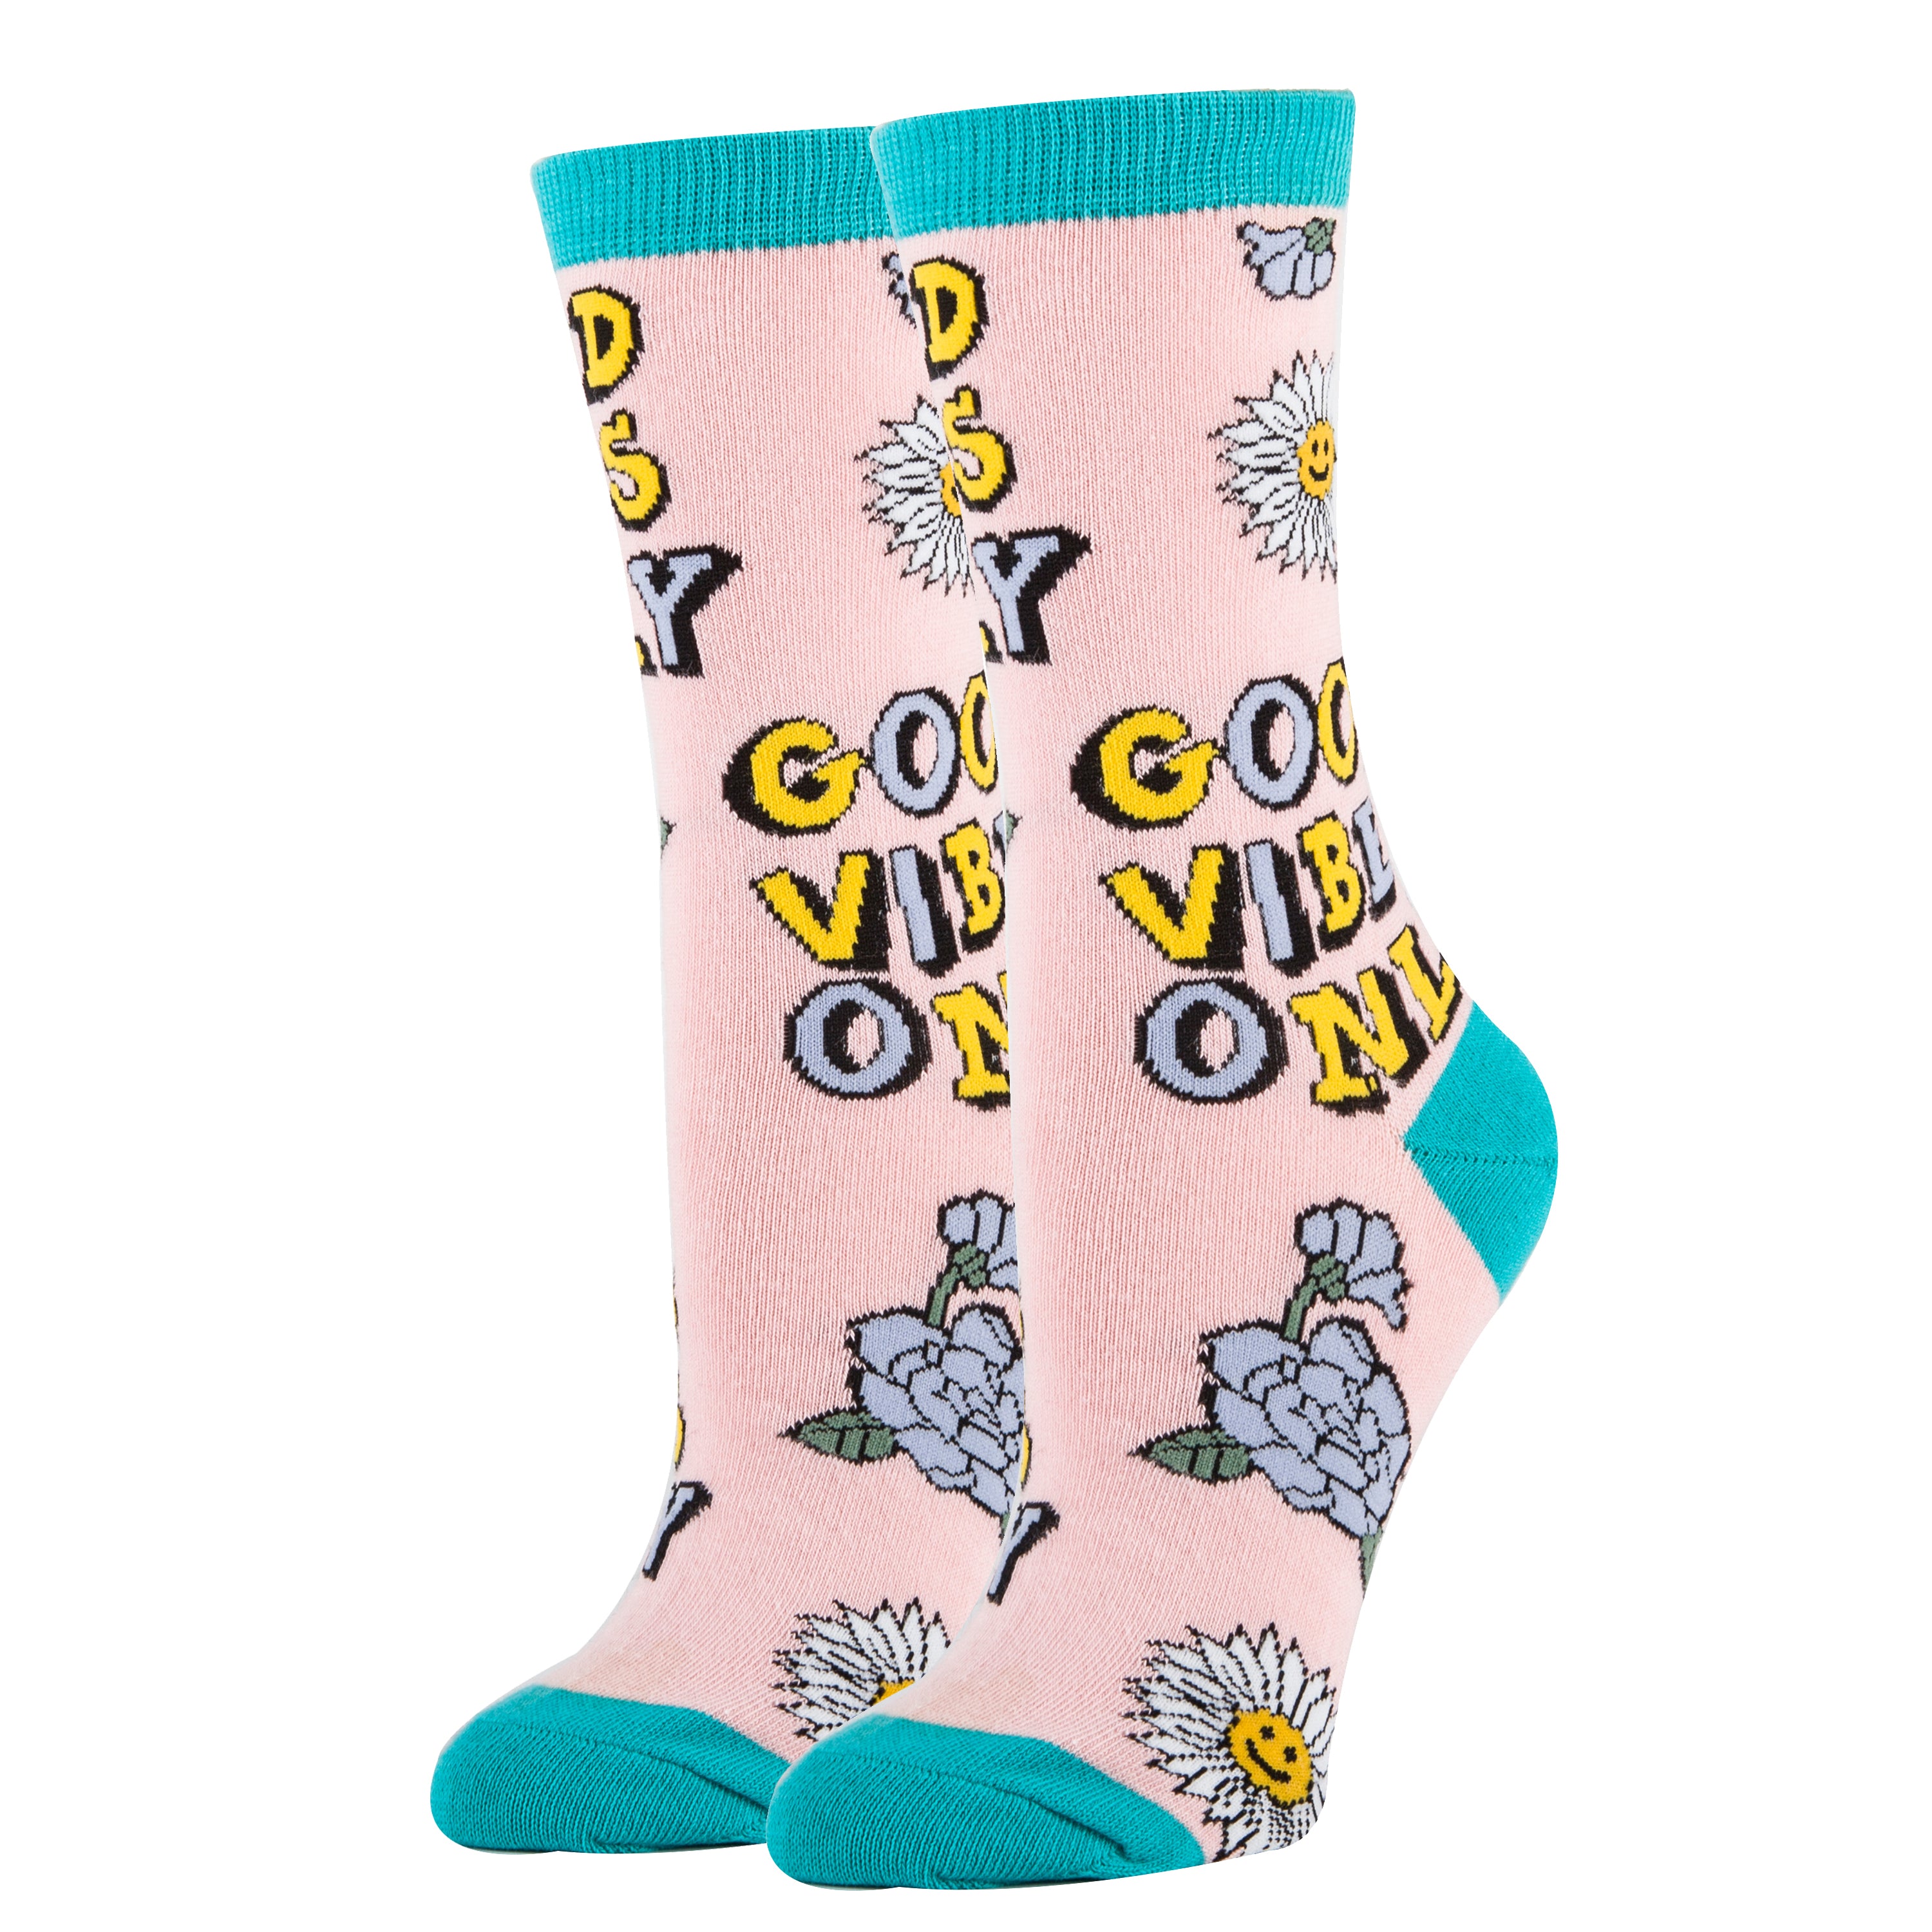 Good Vibes Socks | Novelty Crew Socks For Women